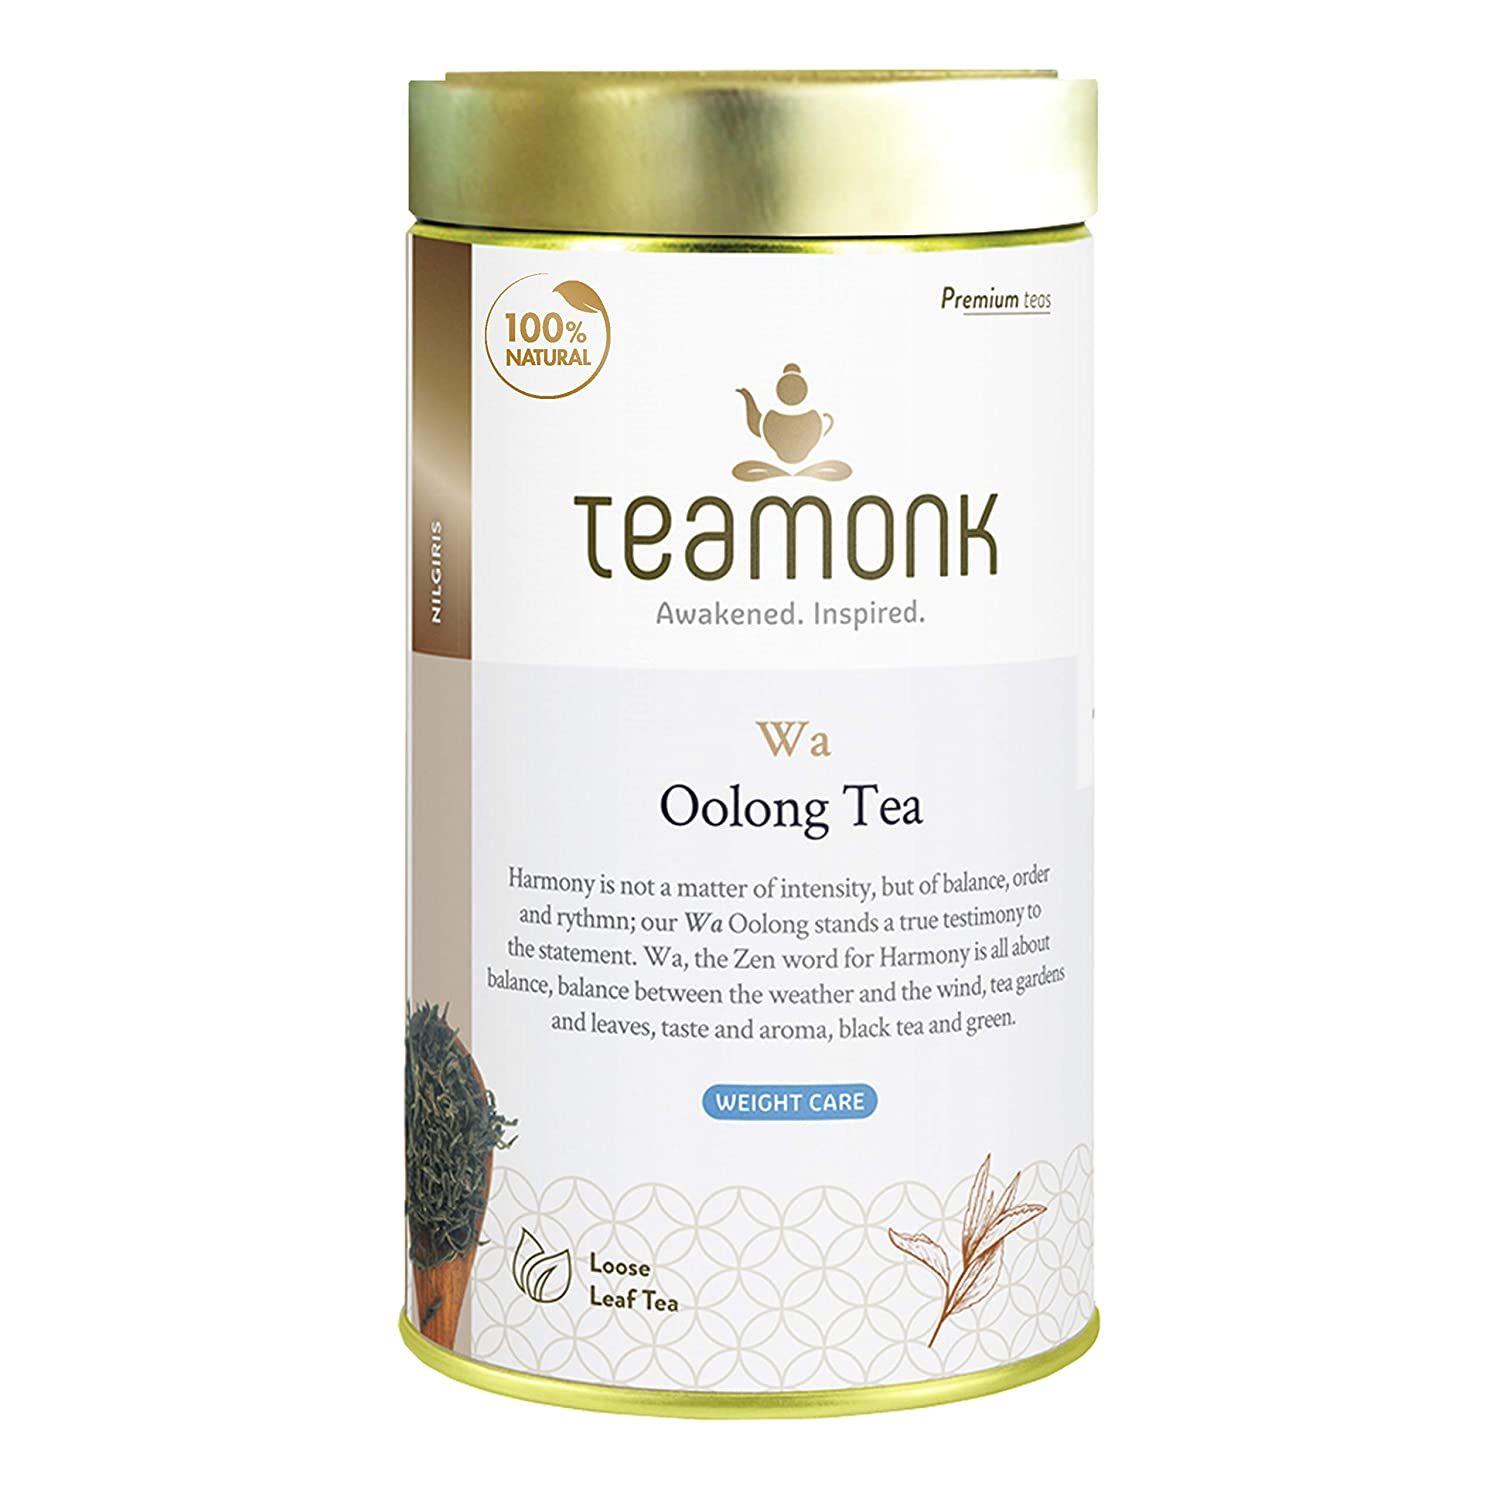 Teamonk Wa Oolong Tea Image